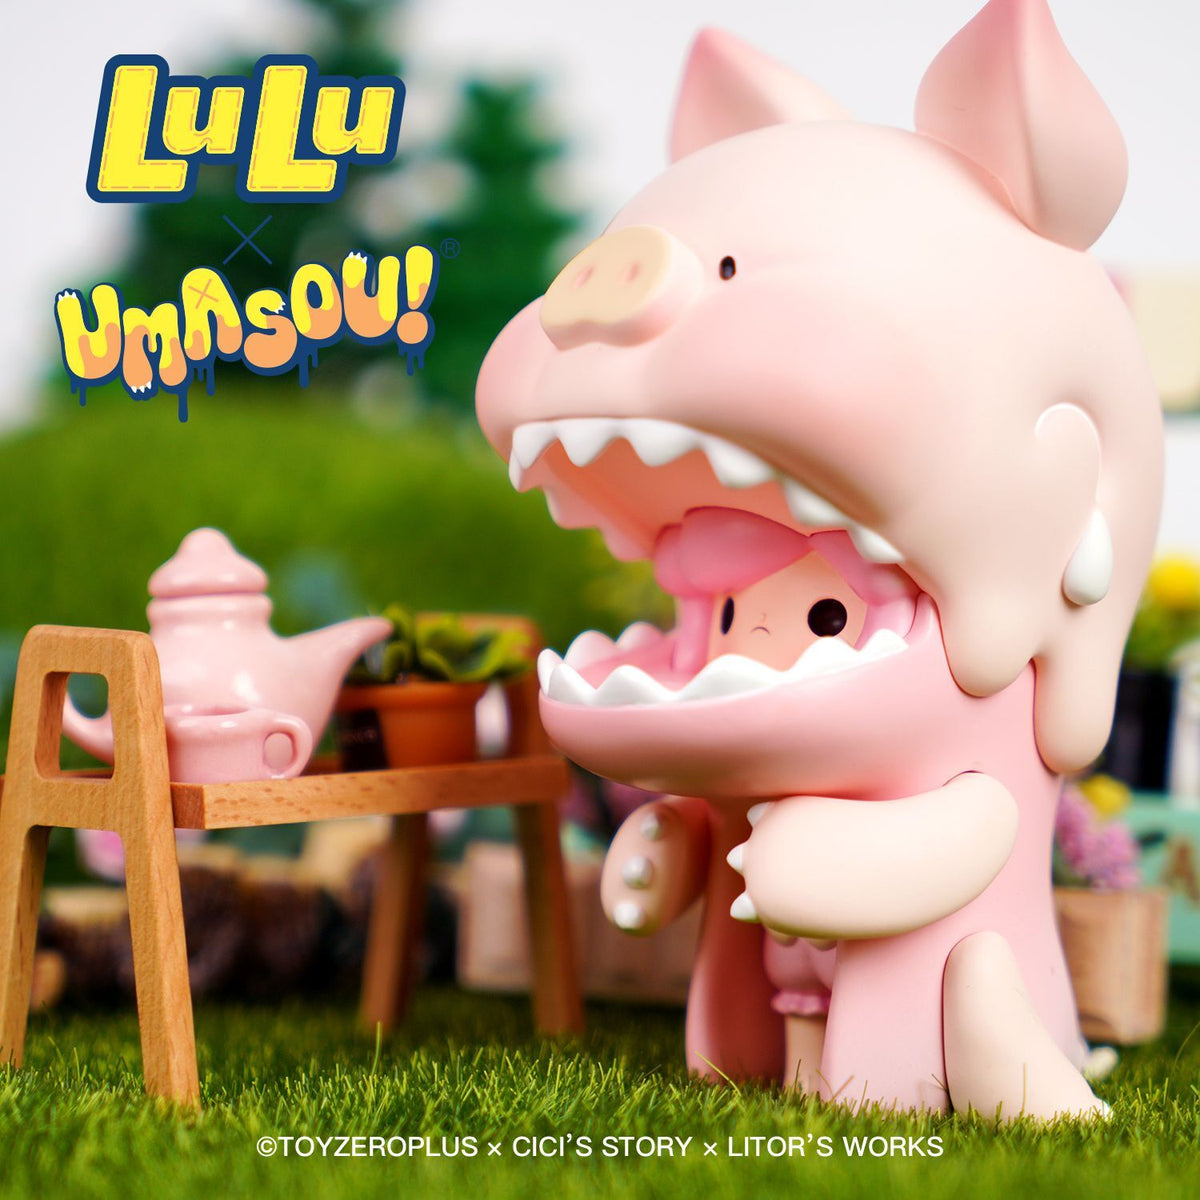 Lulu x Umasou! Diaper Art Toy Figure by Litor&#39;s Work x TOYZEROPLUS x Cici&#39;s Story